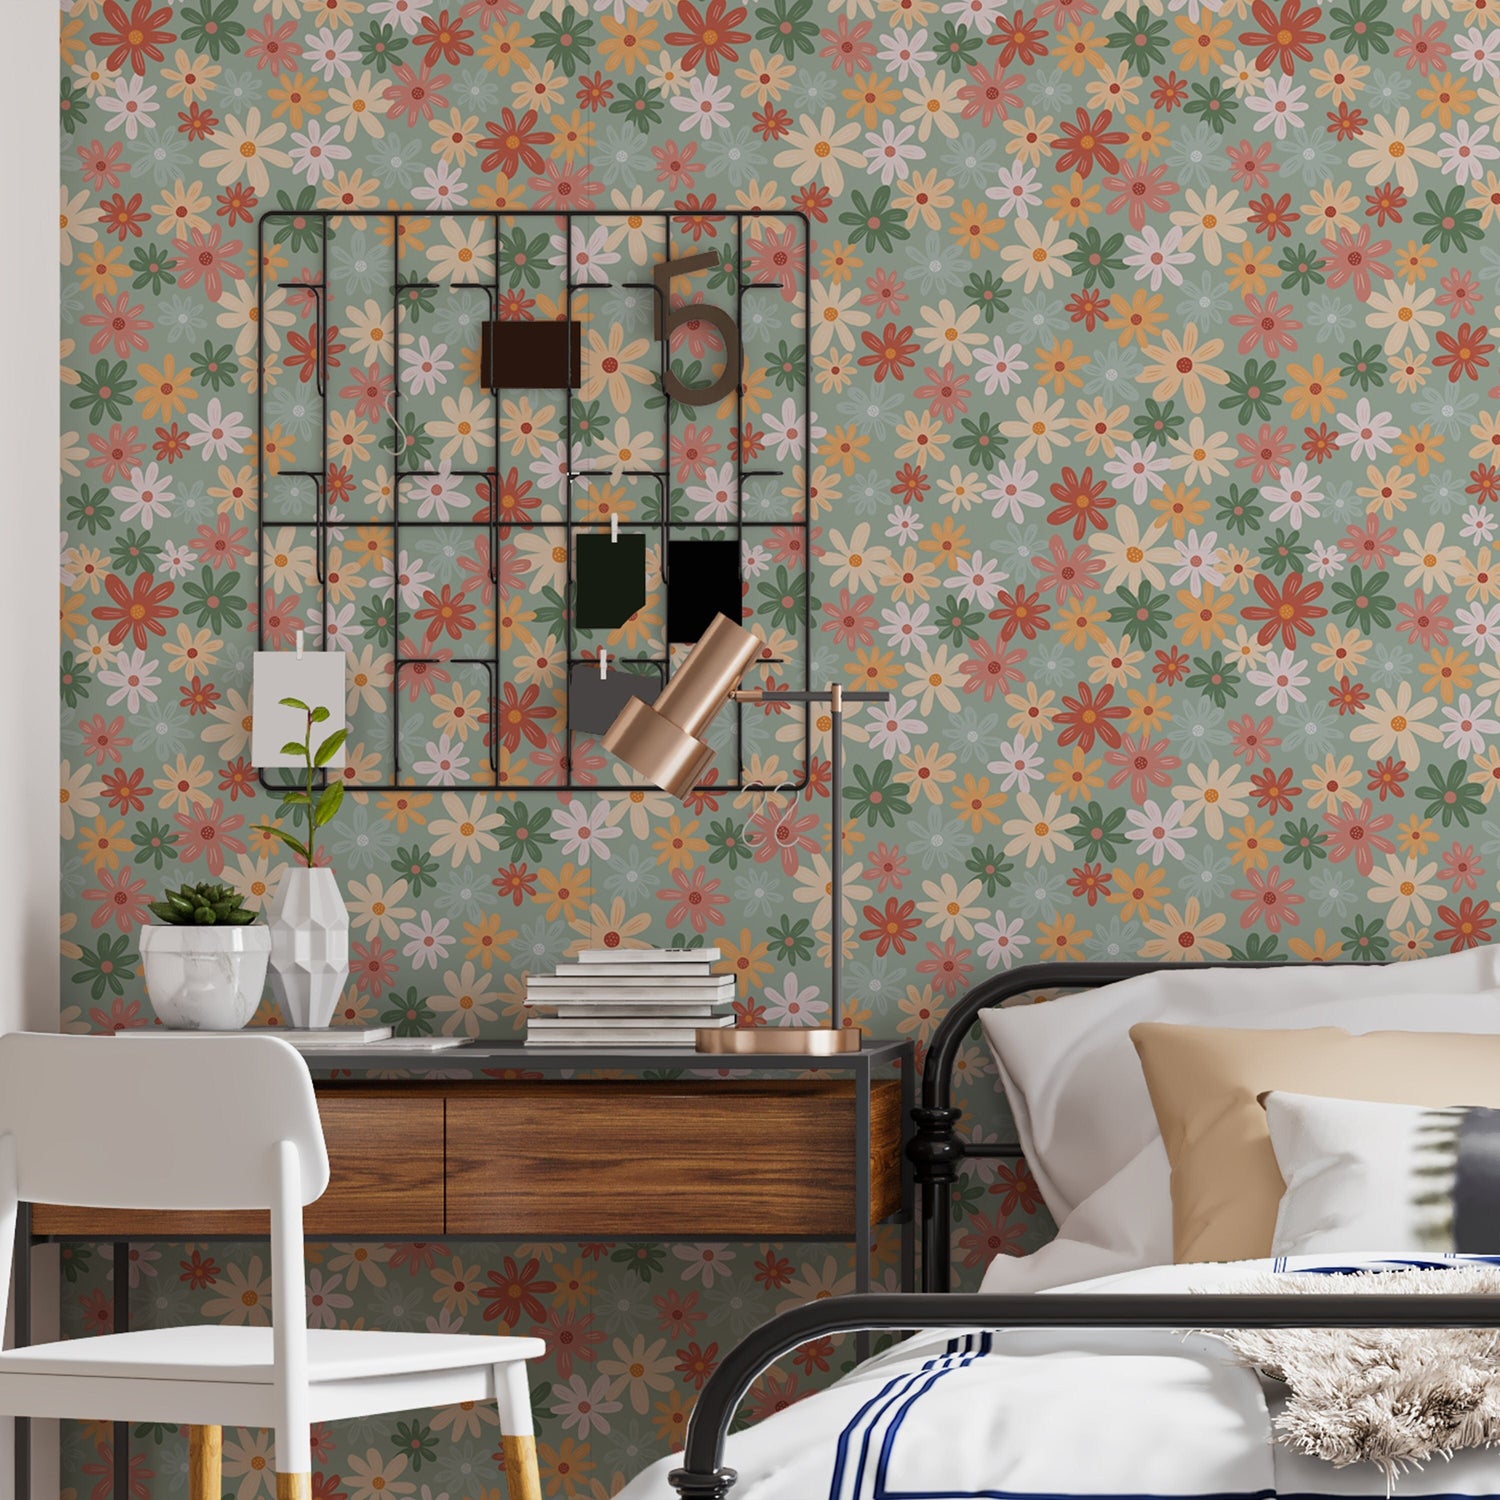 Blossom chamomile wallpaper,  cute floral vintage wallpaper, Removable Wallpaper Home Decor